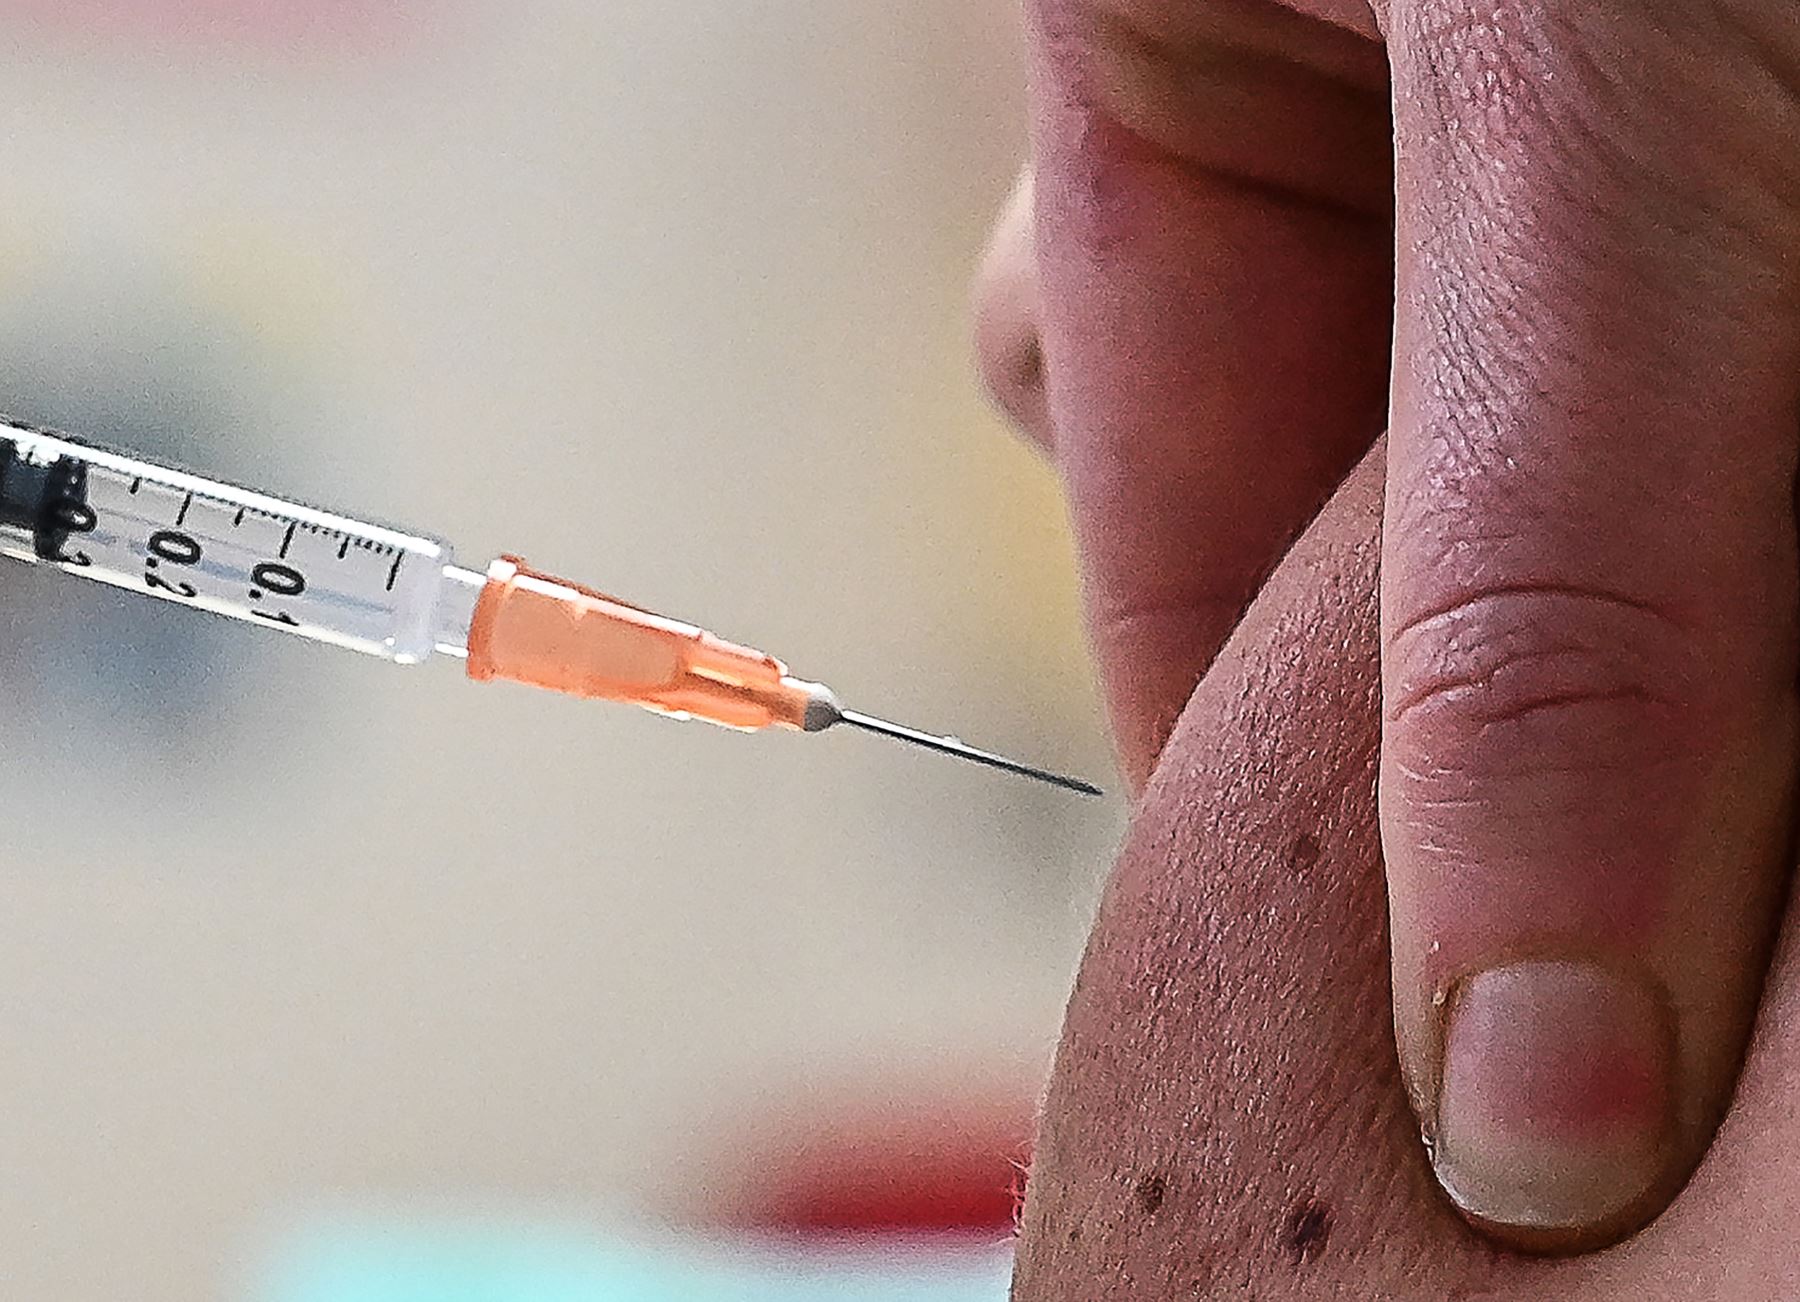 El pasado 30 de diciembre, el mandatario informó que el Gobierno cerró un acuerdo con la farmacéutica Janssen, filial de Johnson & Johnson, para adquirir nueve millones de vacunas contra la covid-19. Foto: AFP